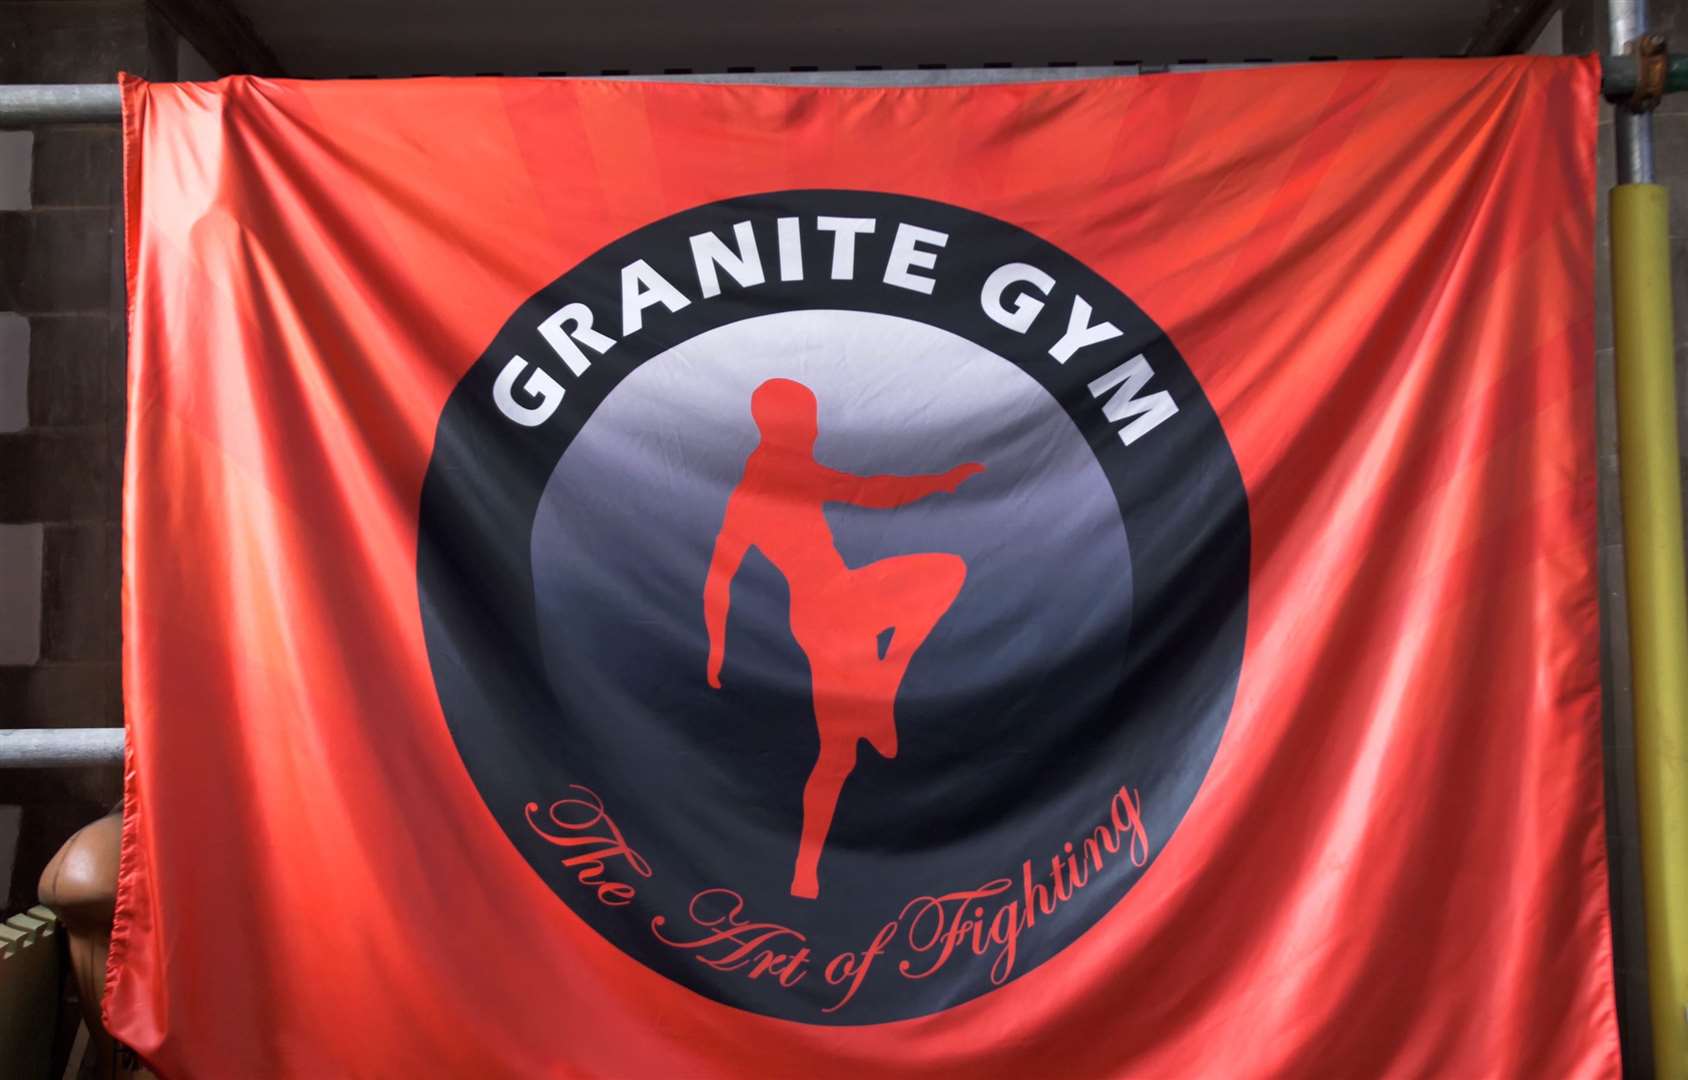 The Granite Gym flag